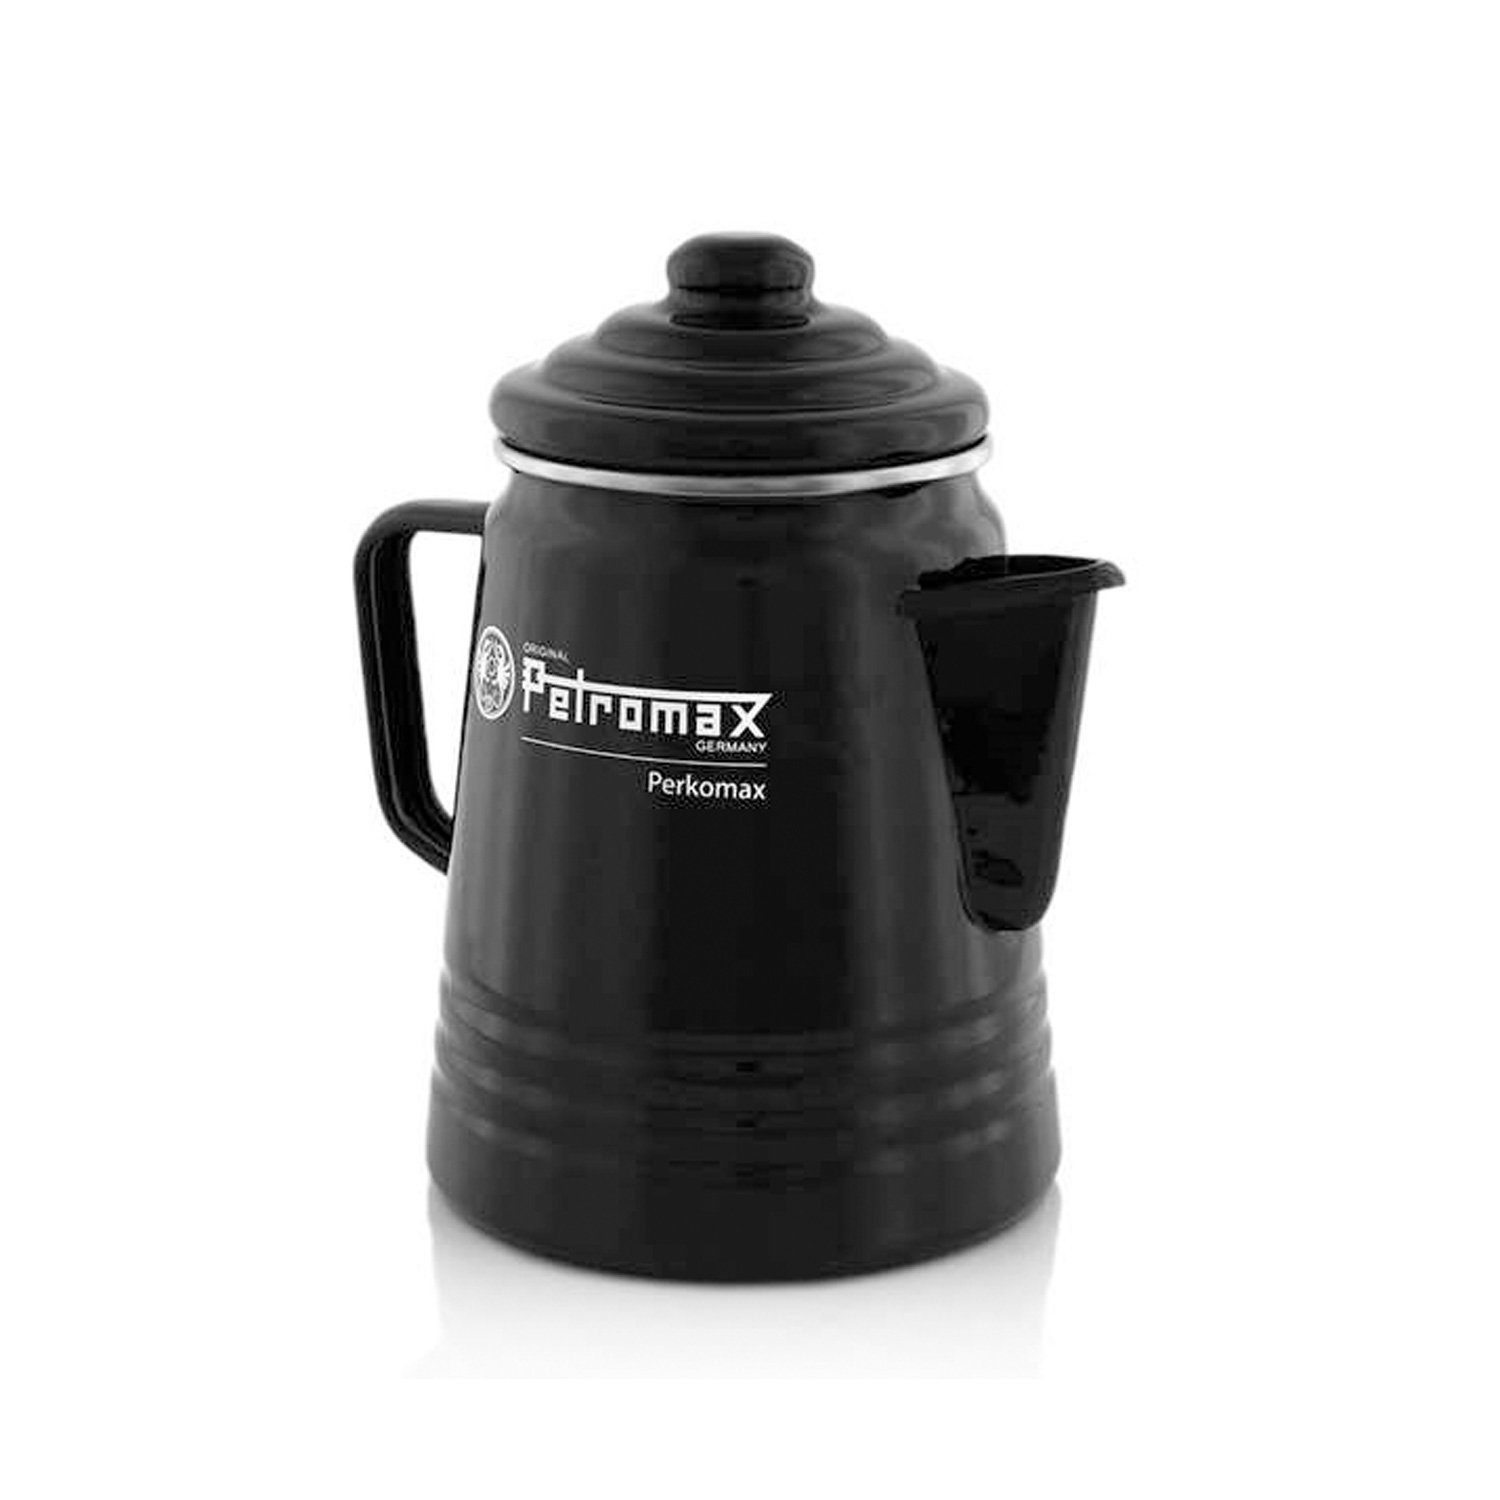 per-9-s Kaffeekanne Perkolator 1,3l Petromax 1.3l Petromax Perkolator Tee Kocher schwarz, Kaffee Kanne